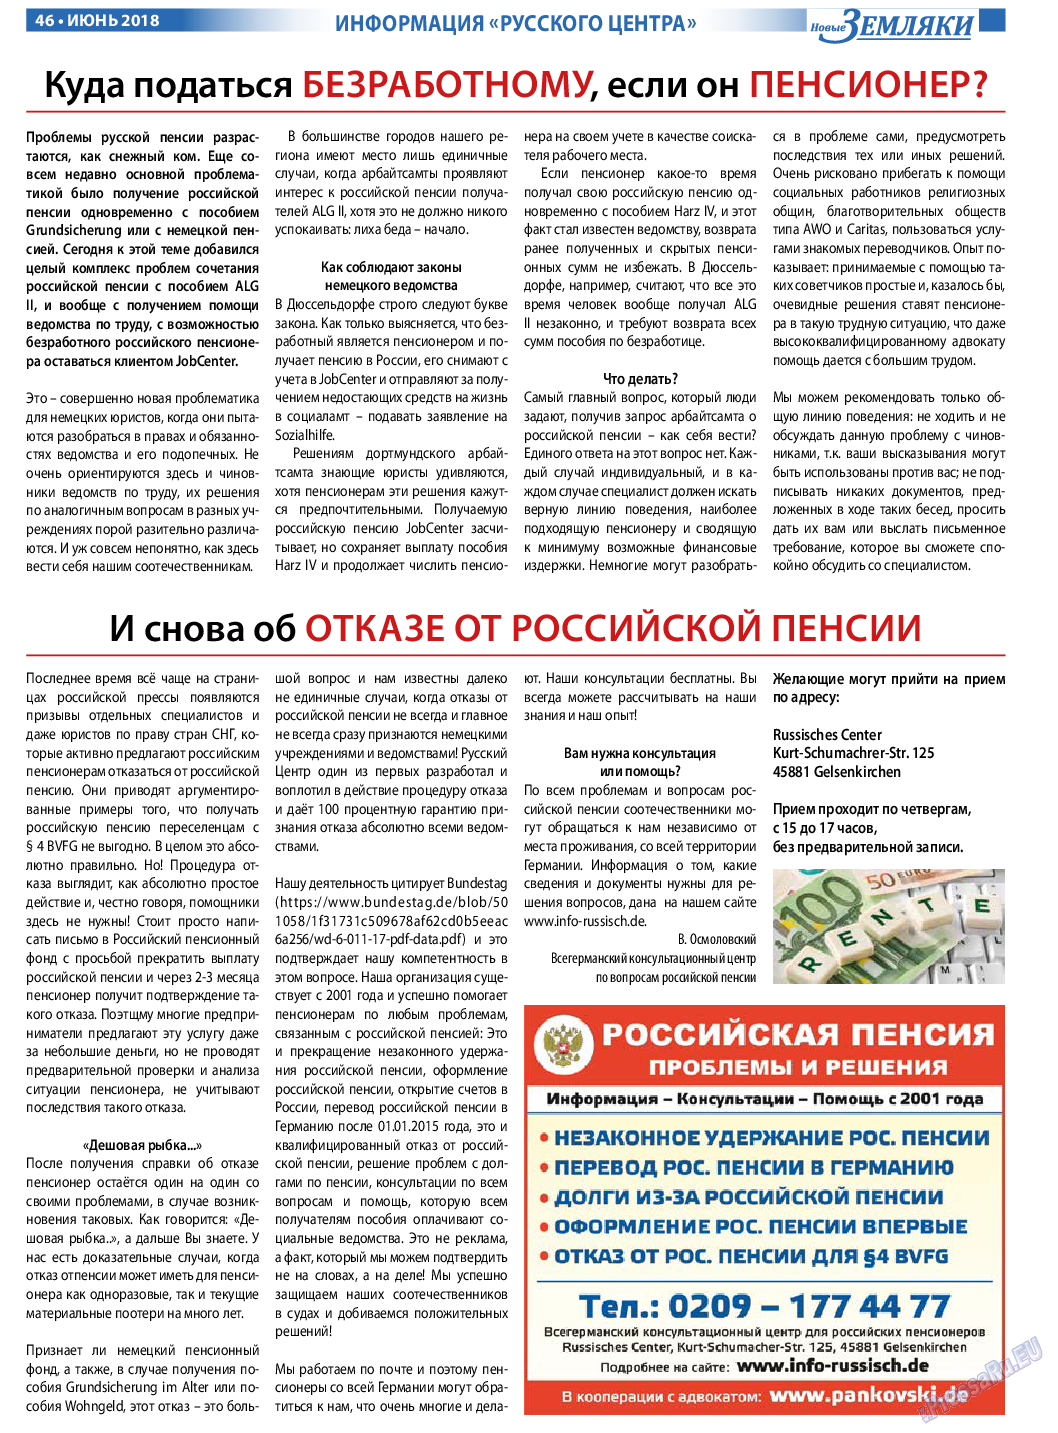 Новые Земляки, газета. 2018 №6 стр.46